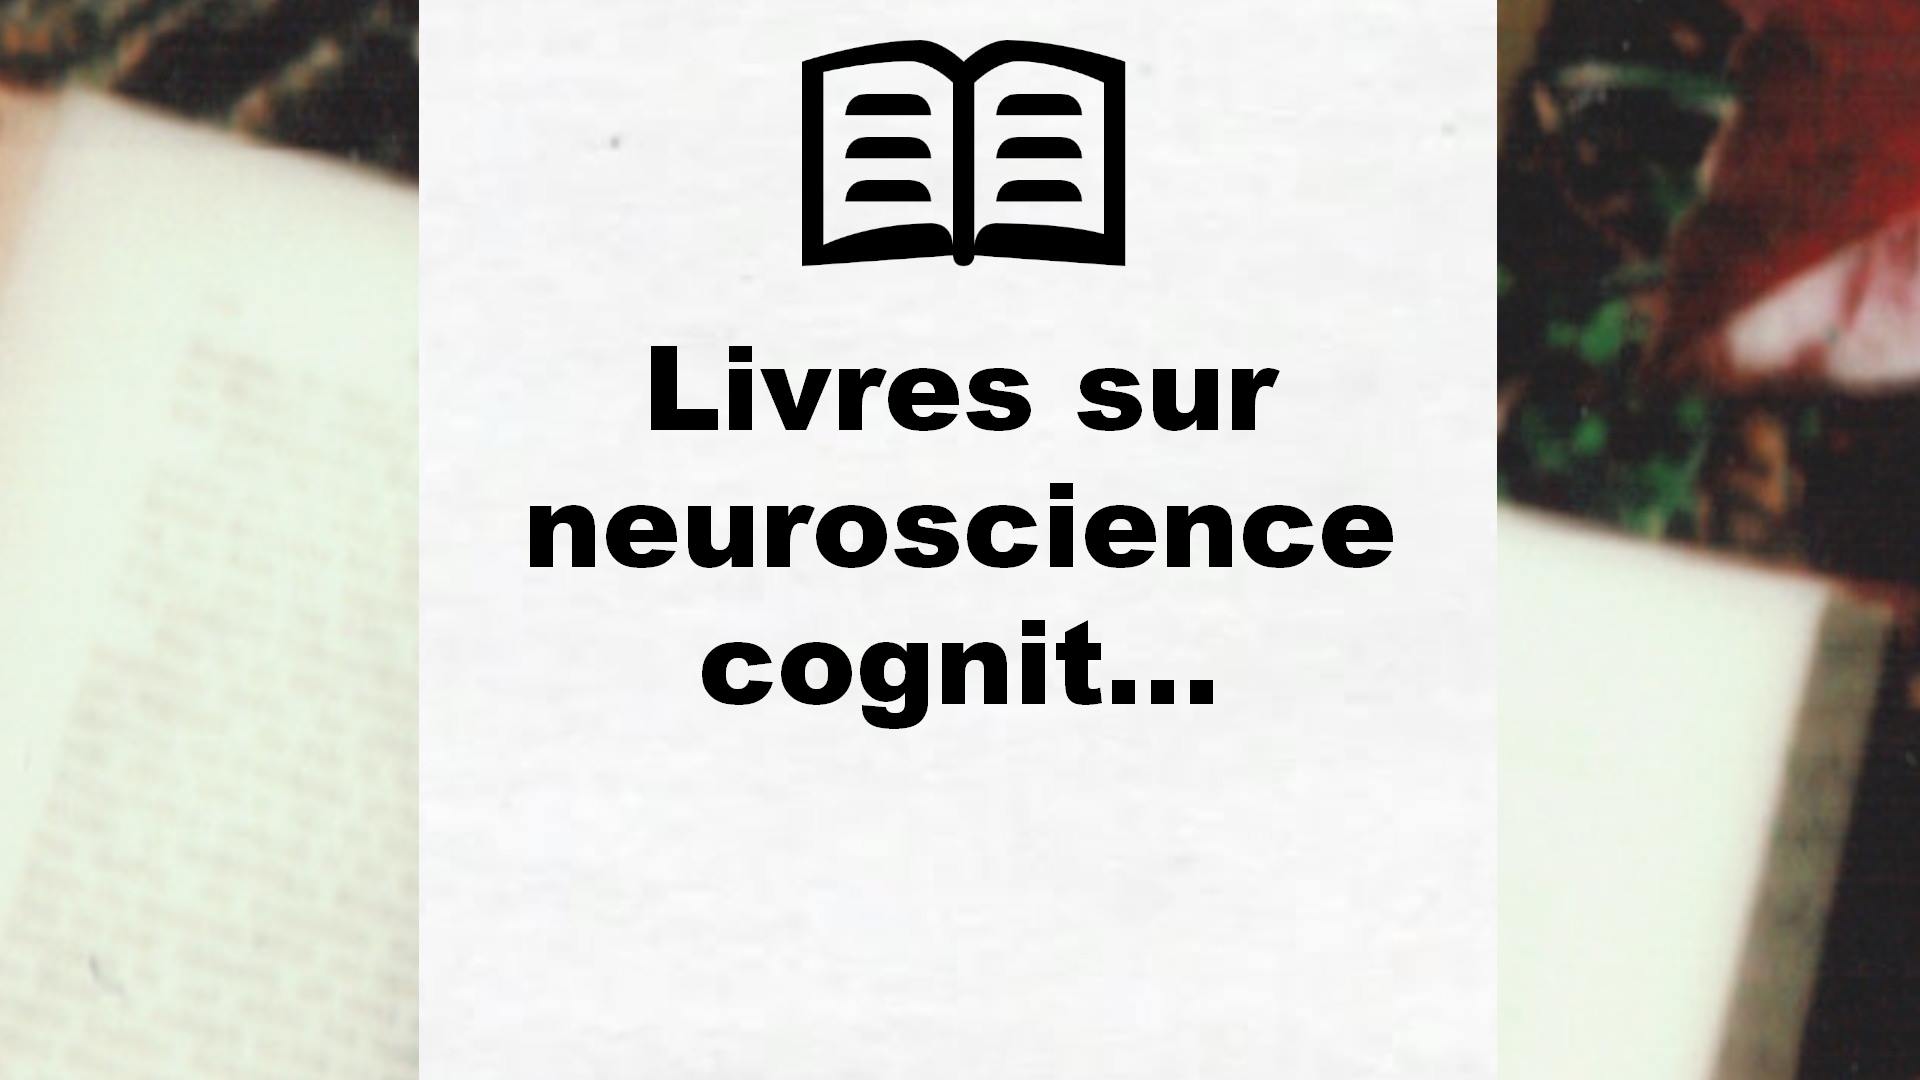 Livres sur neuroscience cognitive